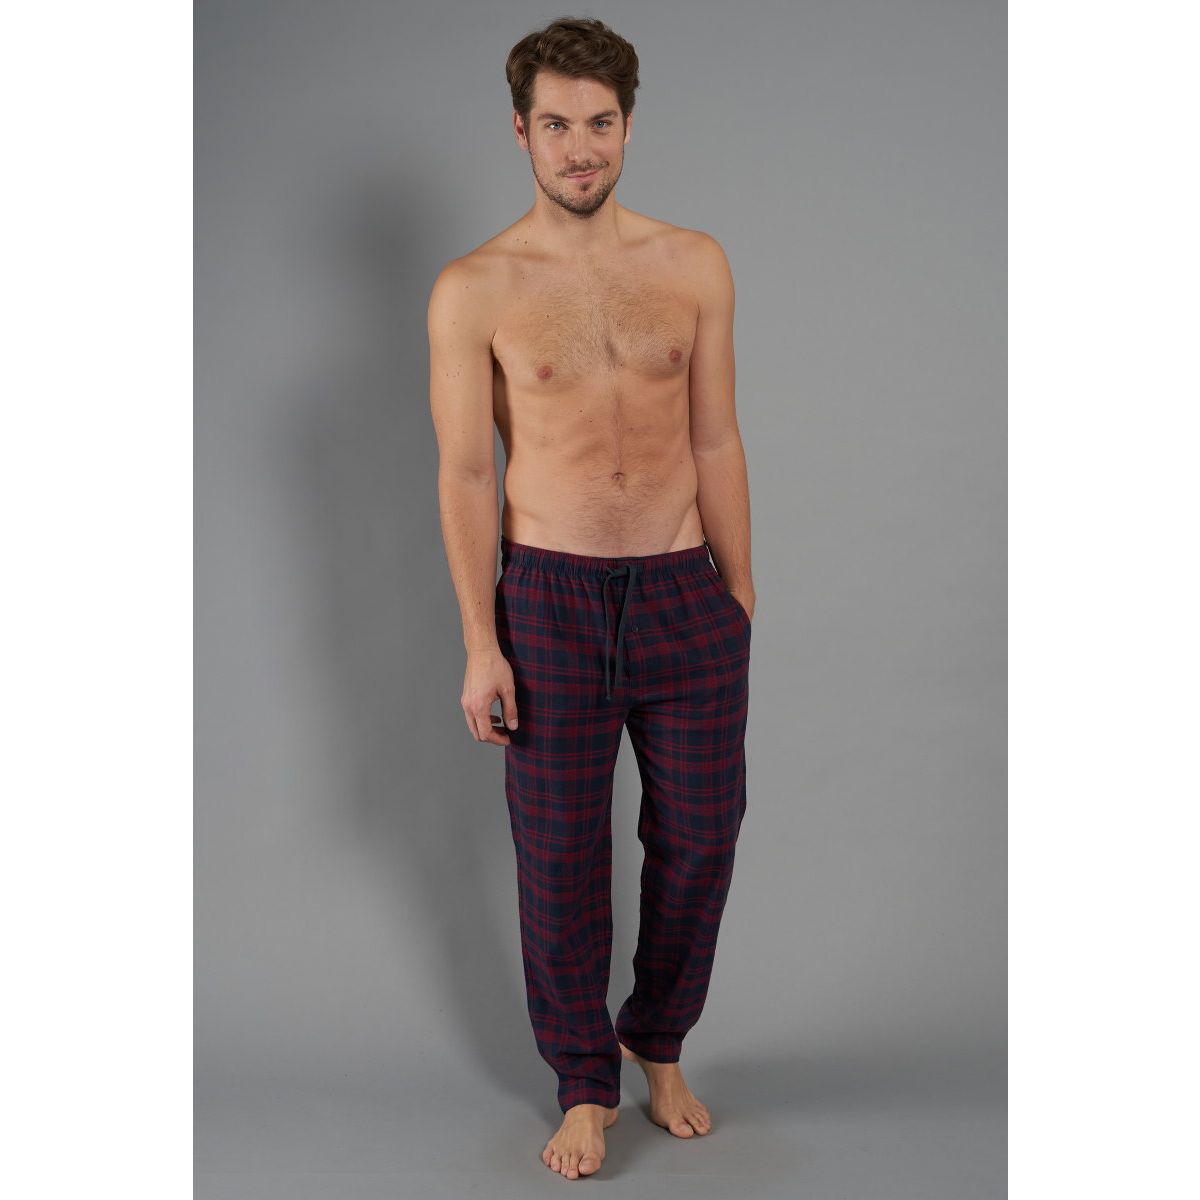 Eerbetoon Deskundige Intensief Flanellen heren pyjamabroek van Tom Tailor | Gratis verzending | Gratis  retour | Snel in huis | Online de mooiste pyjama's, nachthemden, ondermode  en meer